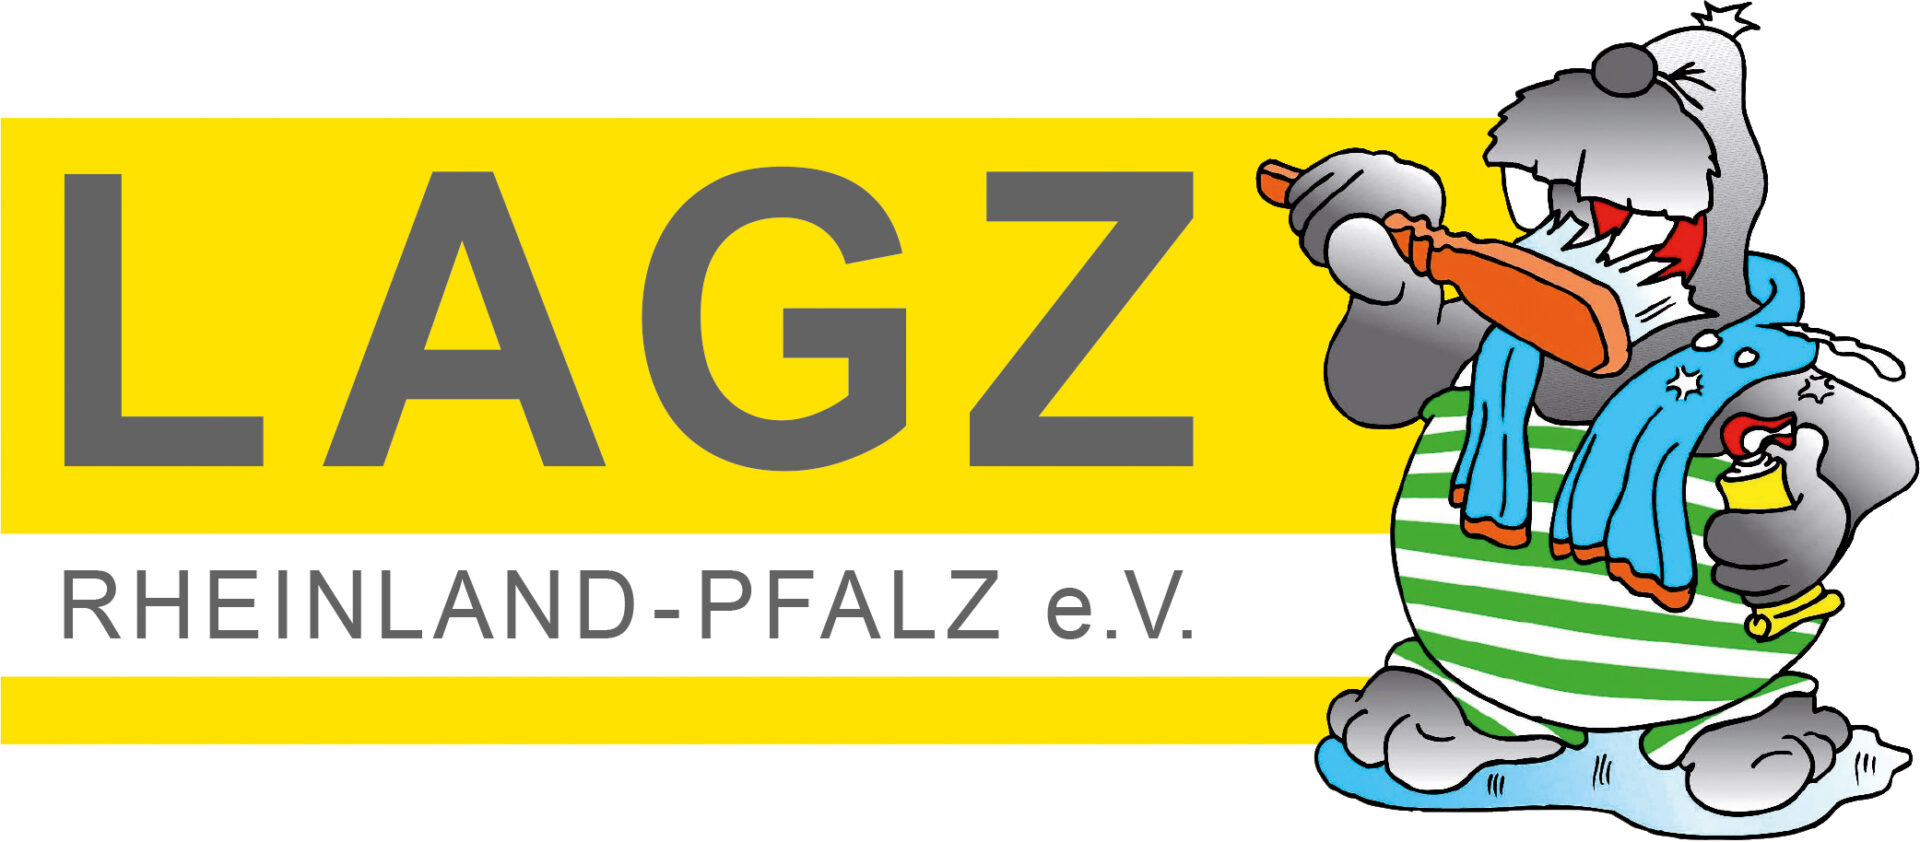 LAGZ_Logo_mit_Schrubbel_eV